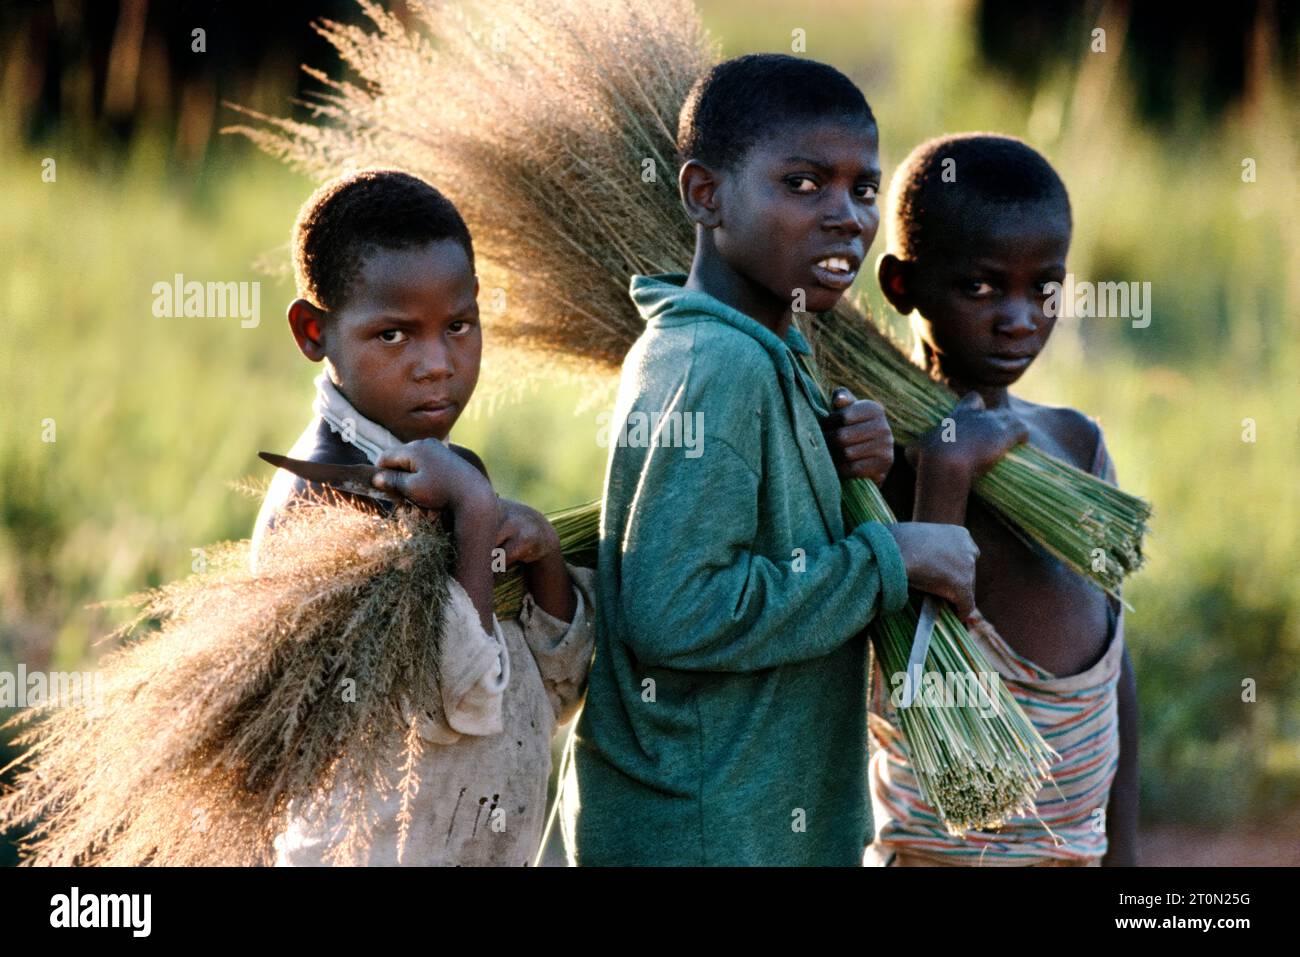 TZA, Tansania: Jungen haben Reisig geschnitten, das zu Besen und Buersten  verarbeitet wird. | TZA, Tanzania: Boys have cut off dry grass to make brushes. Stock Photo